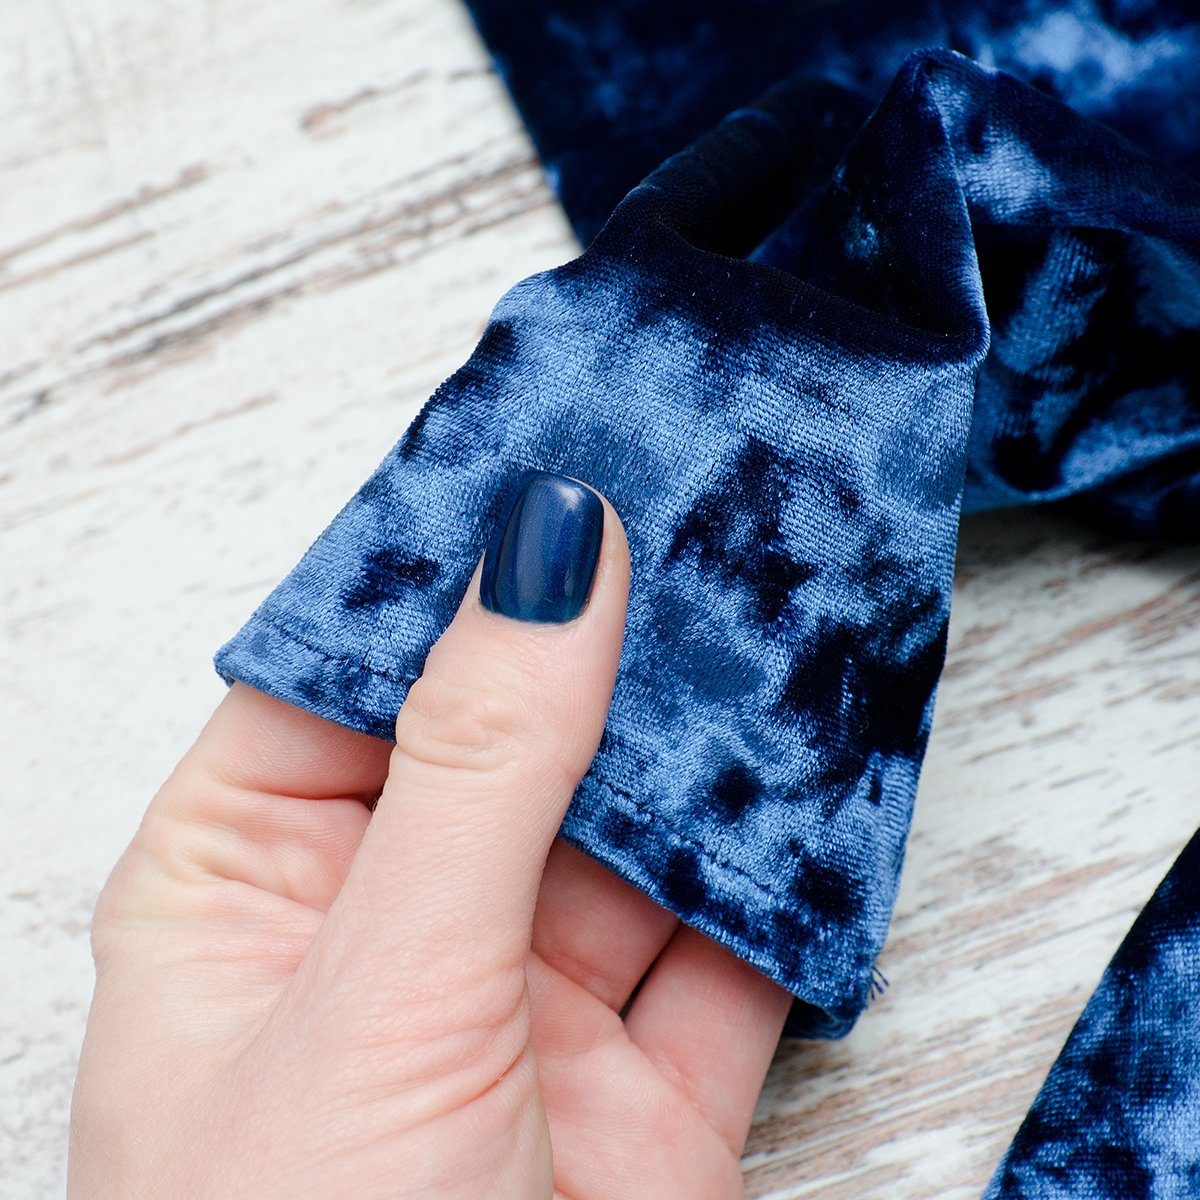 Sleeve of blue velvet dress in female hand. Fashionable concept